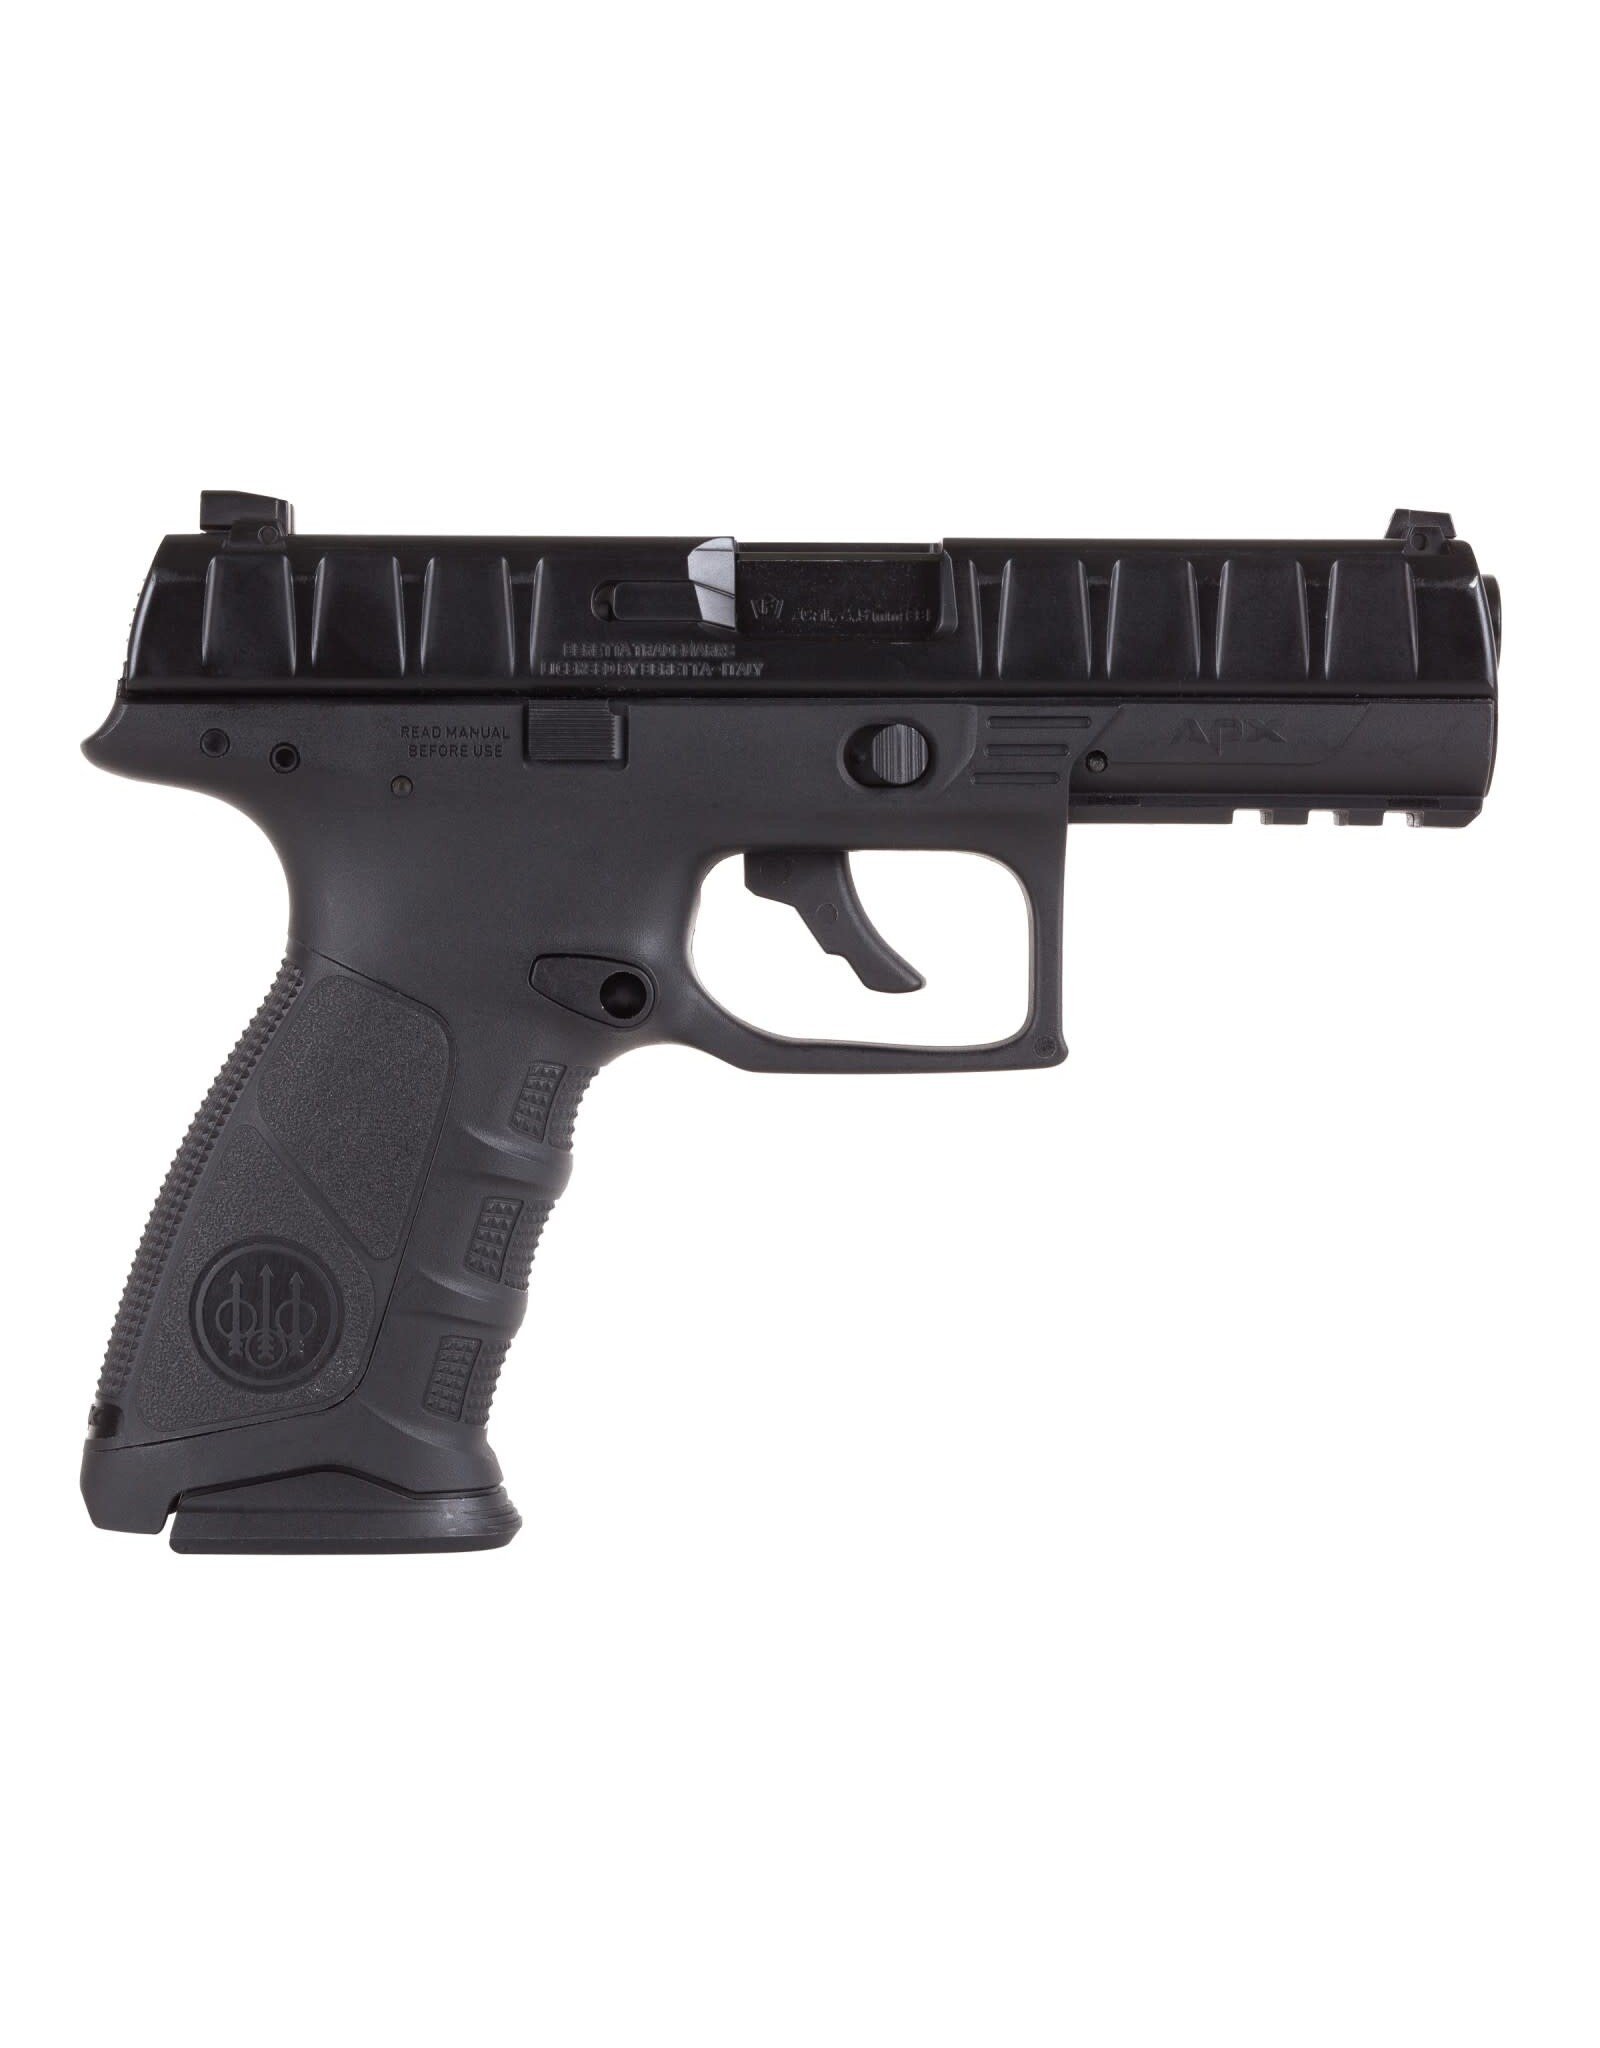 Beretta Beretta APX BB C02 Pistol w/ Blowback -395 FPS